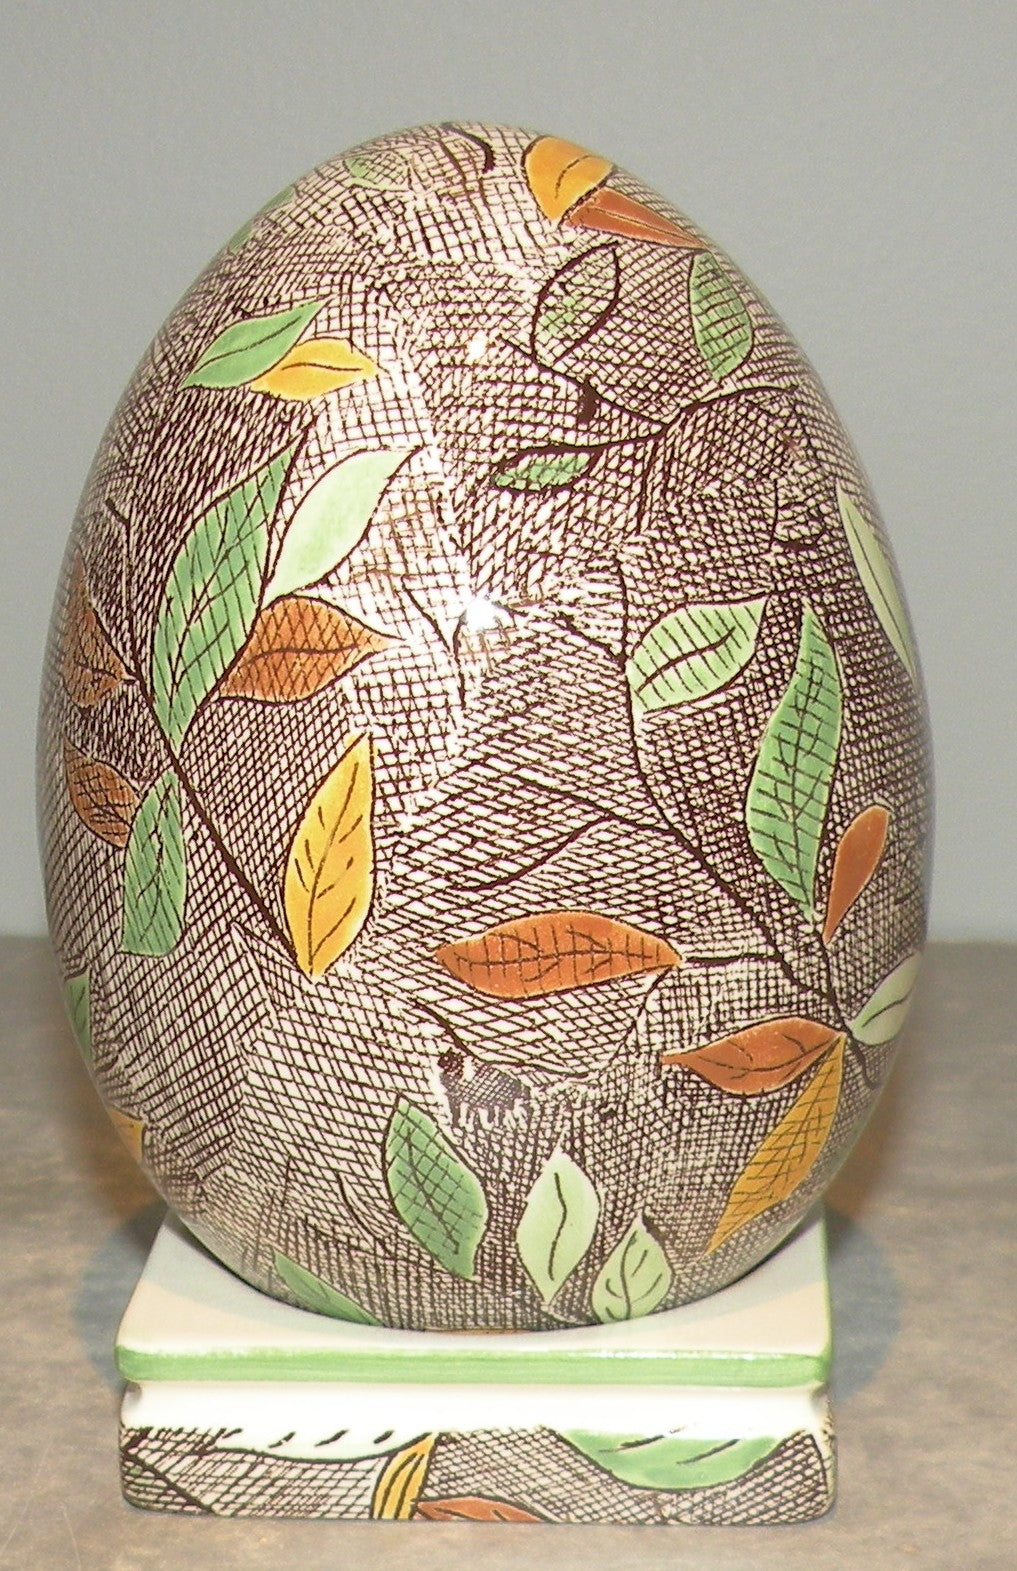 Egg, Rambouillet